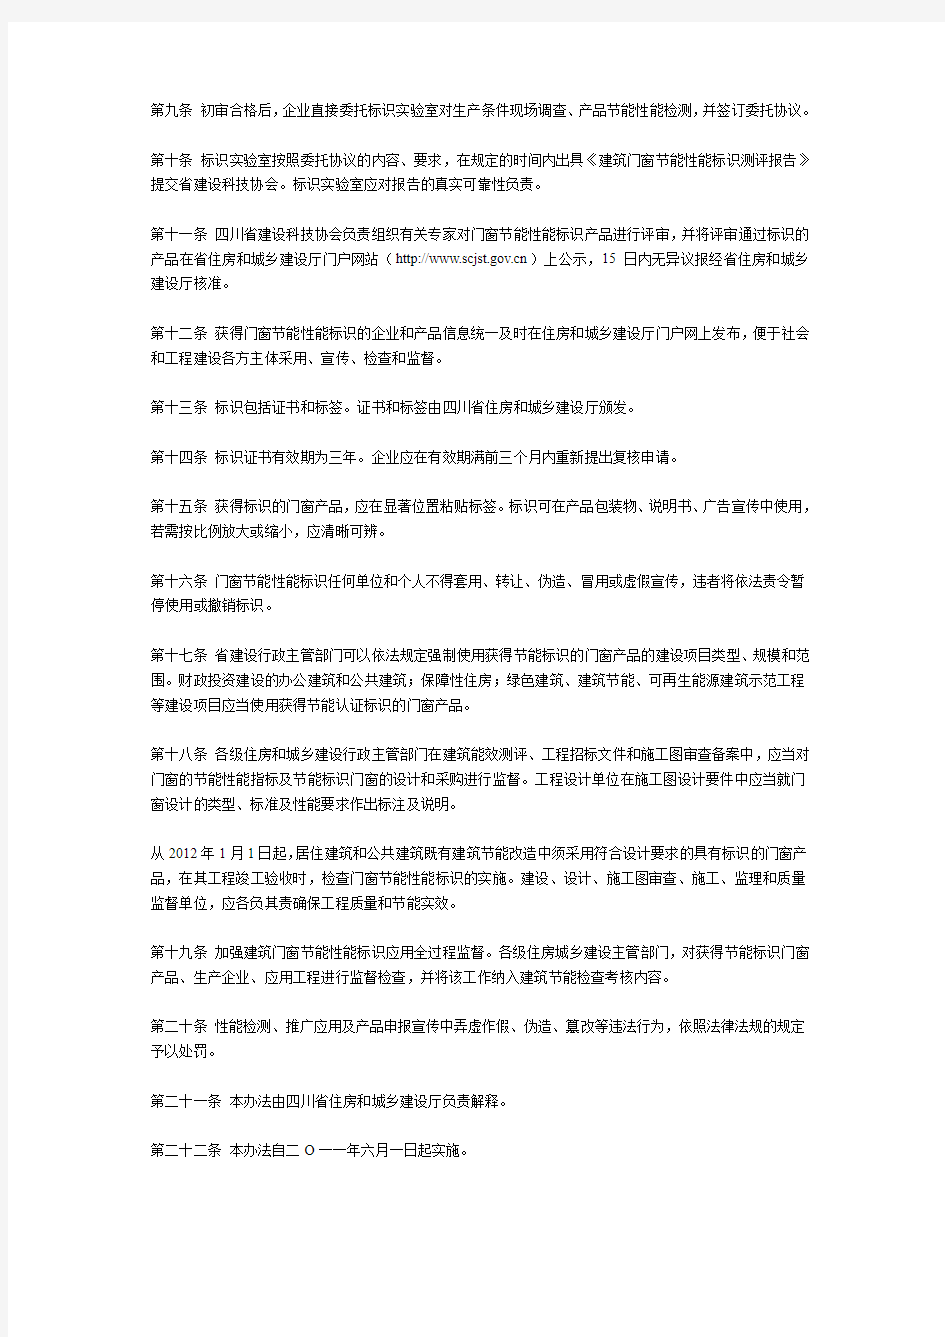 四川省建筑门窗节能性能标识工作暂行管理办法